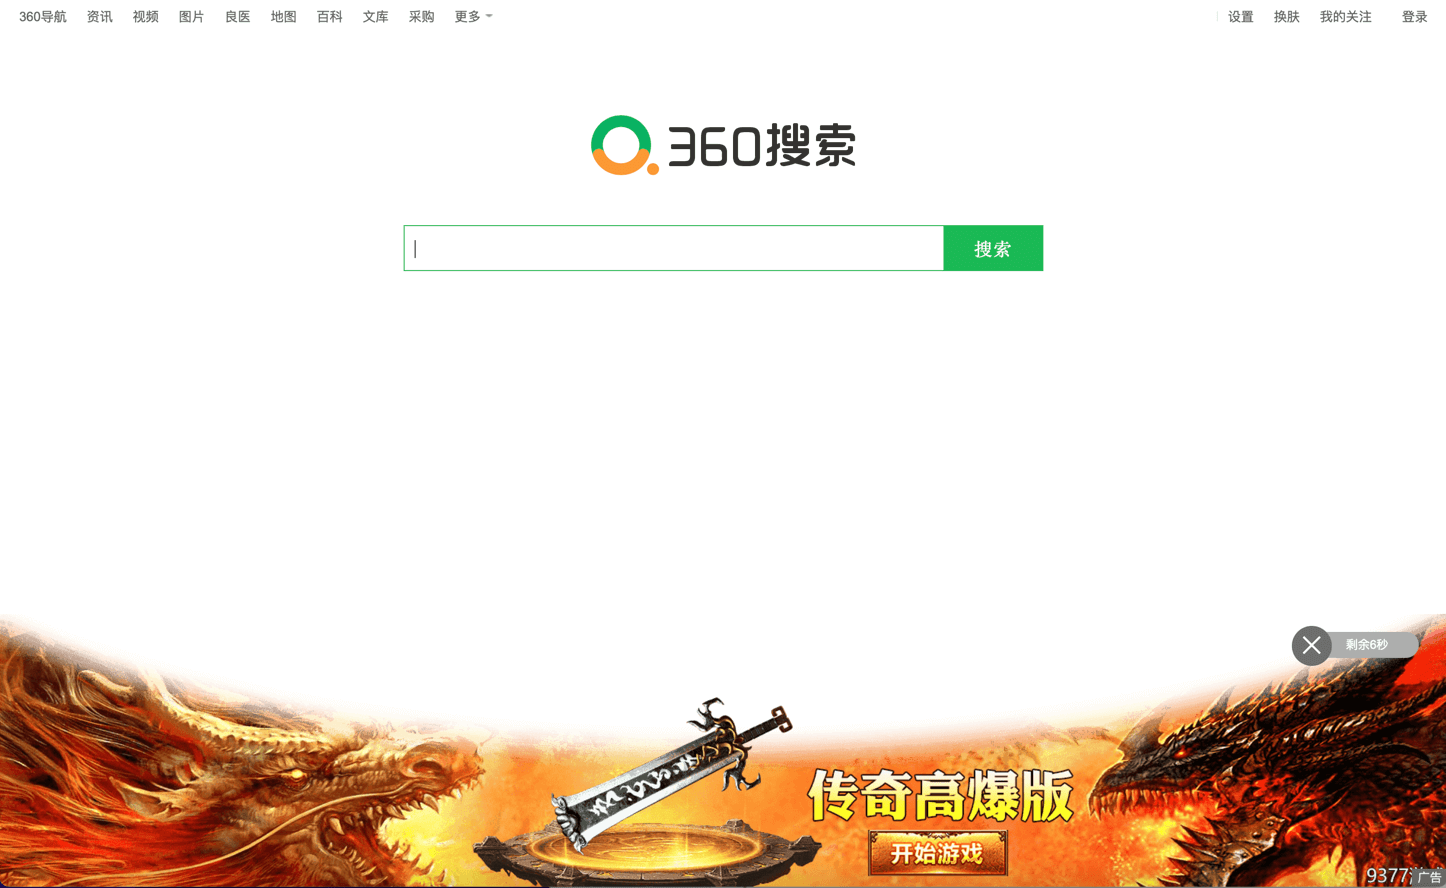 Qihoo 360 Search Engine with Ads